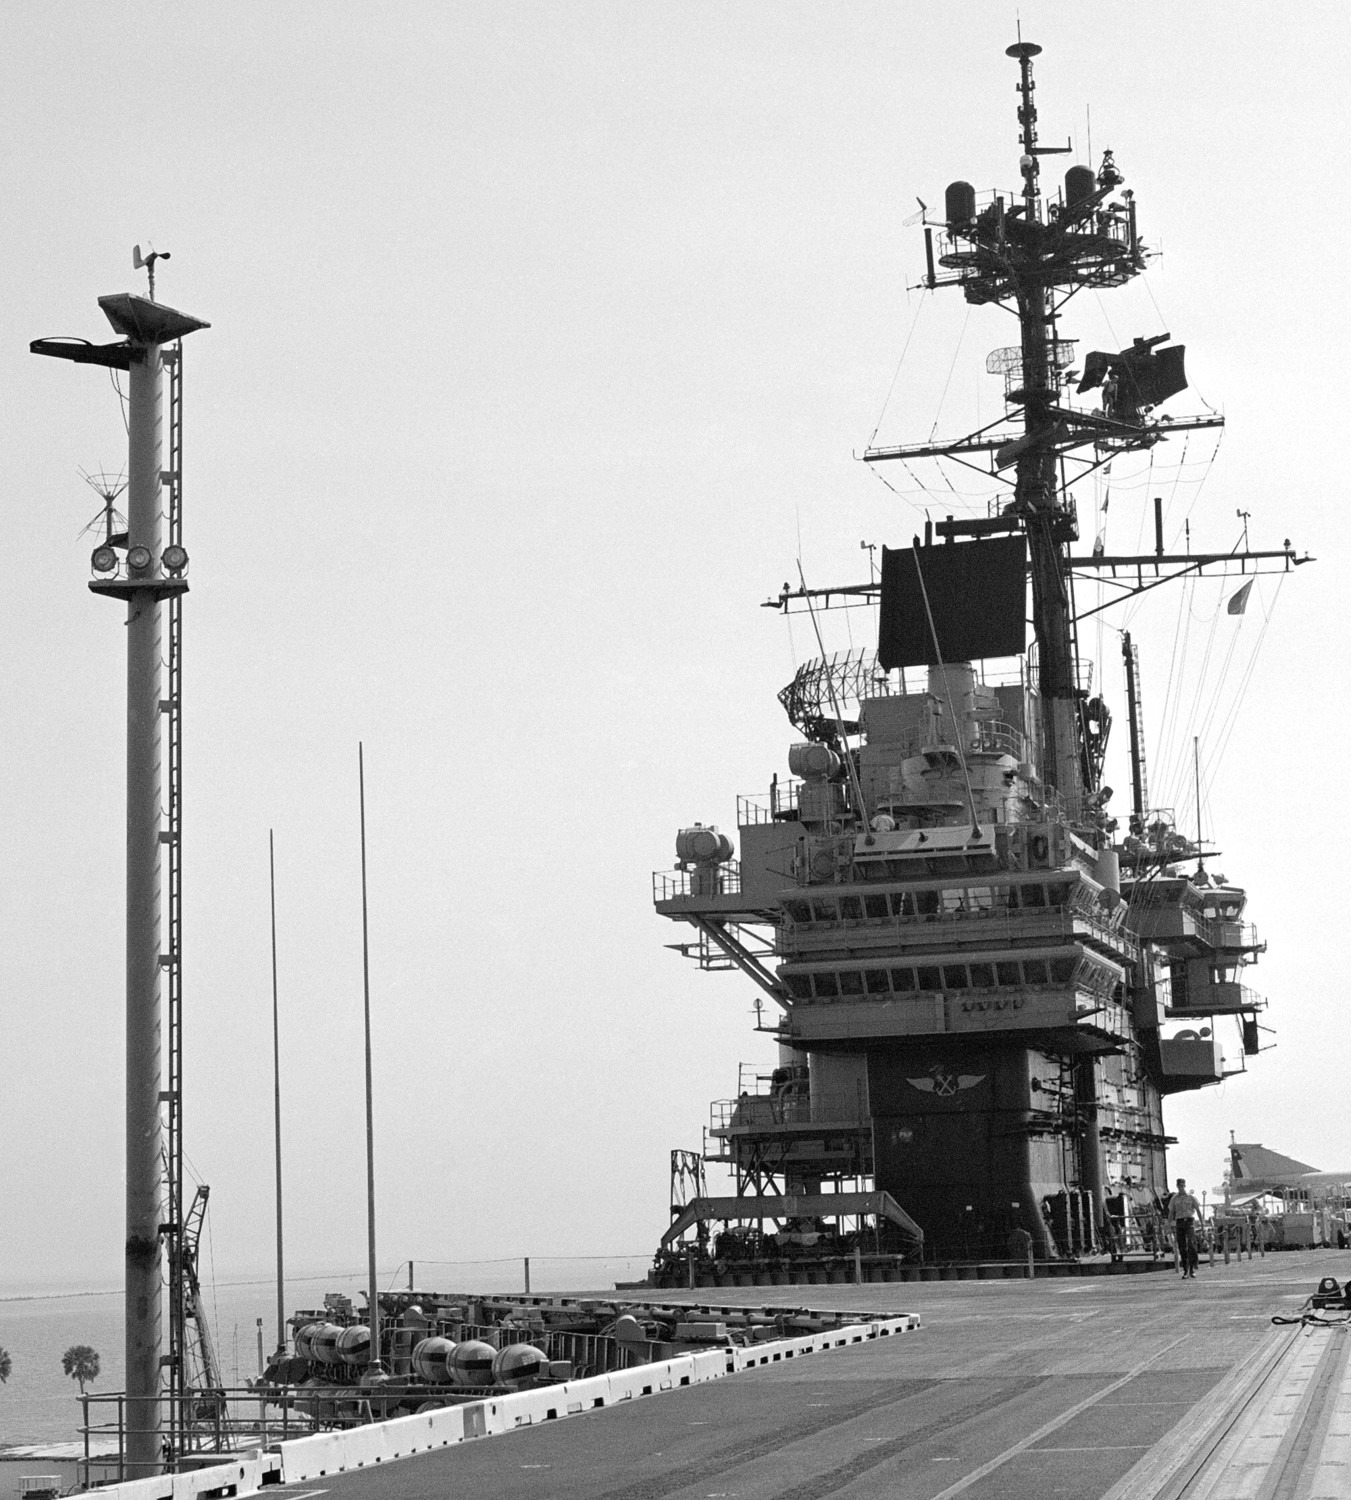 cv-59 uss forrestal aircraft carrier us navy 91